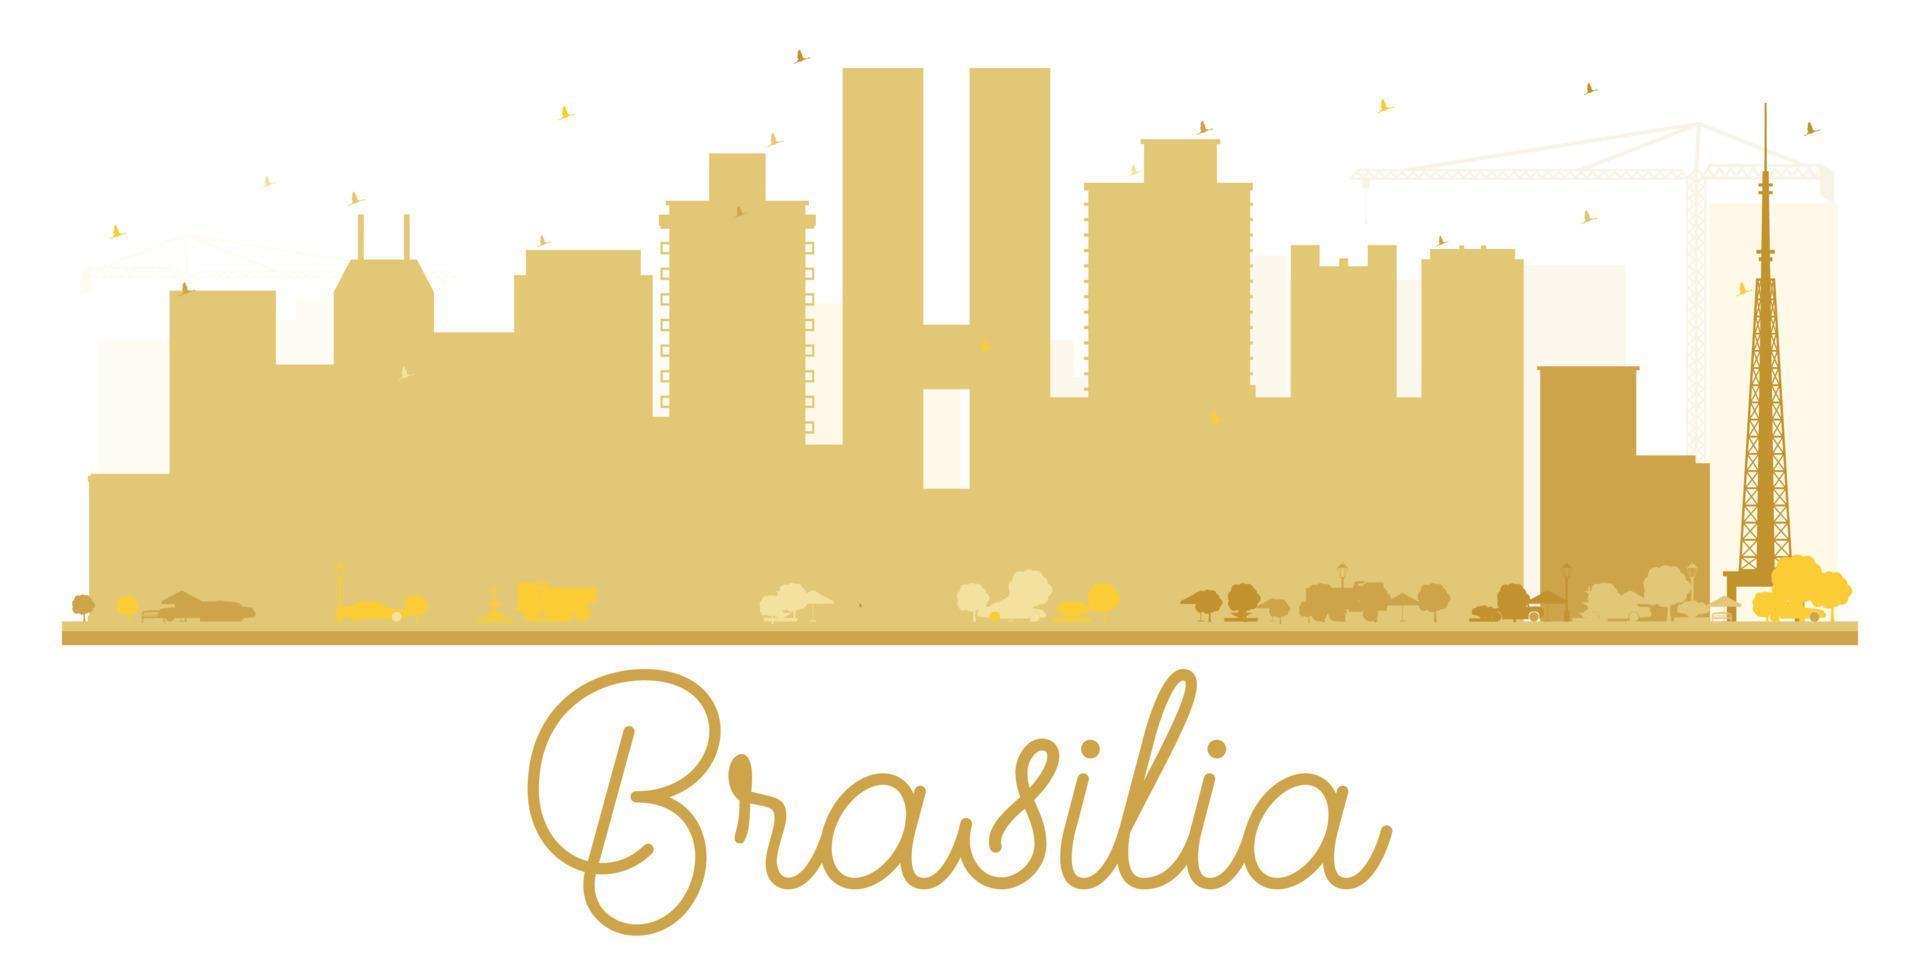 silhueta dourada do horizonte da cidade de brasilia. vetor